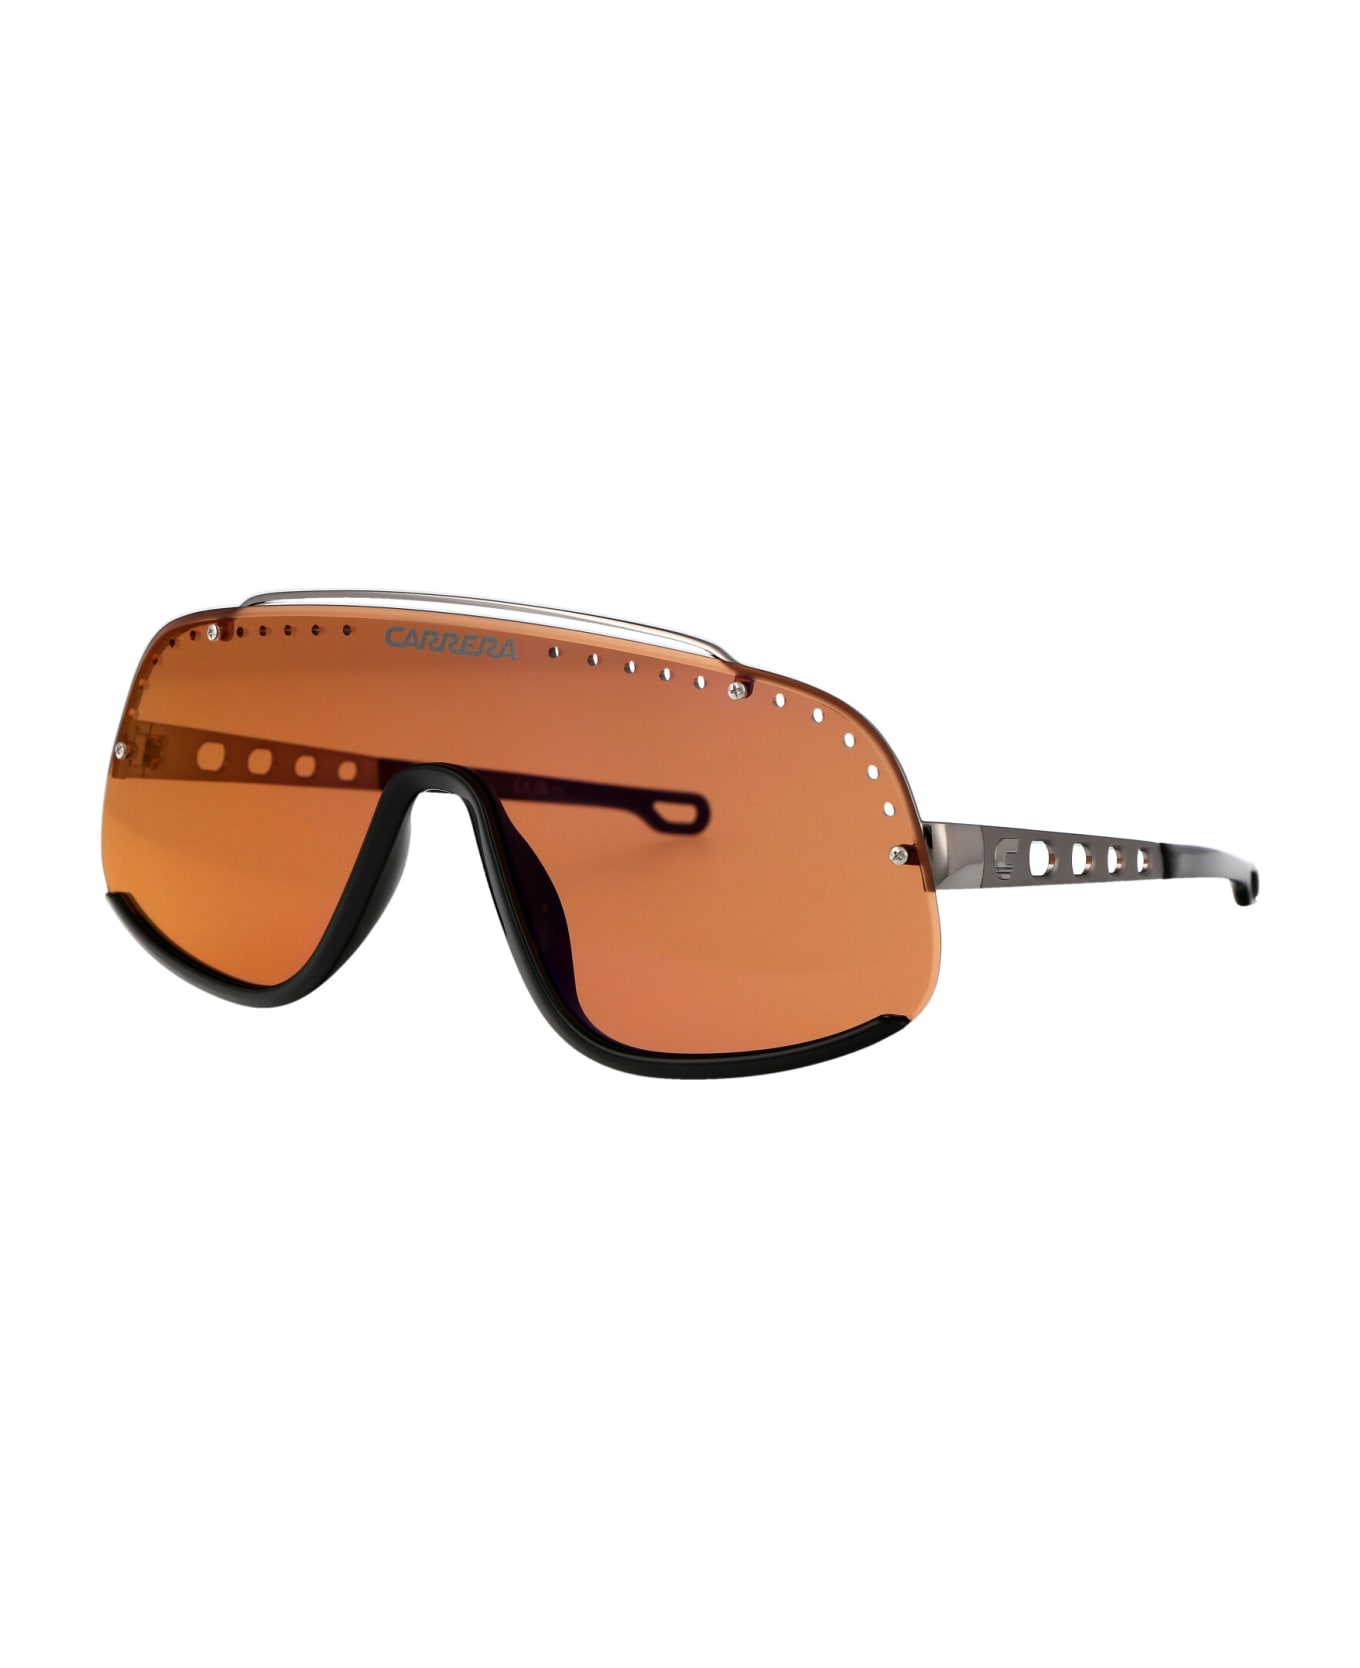 Carrera Flaglab 16 Sunglasses - 8IJDP ORN RUT